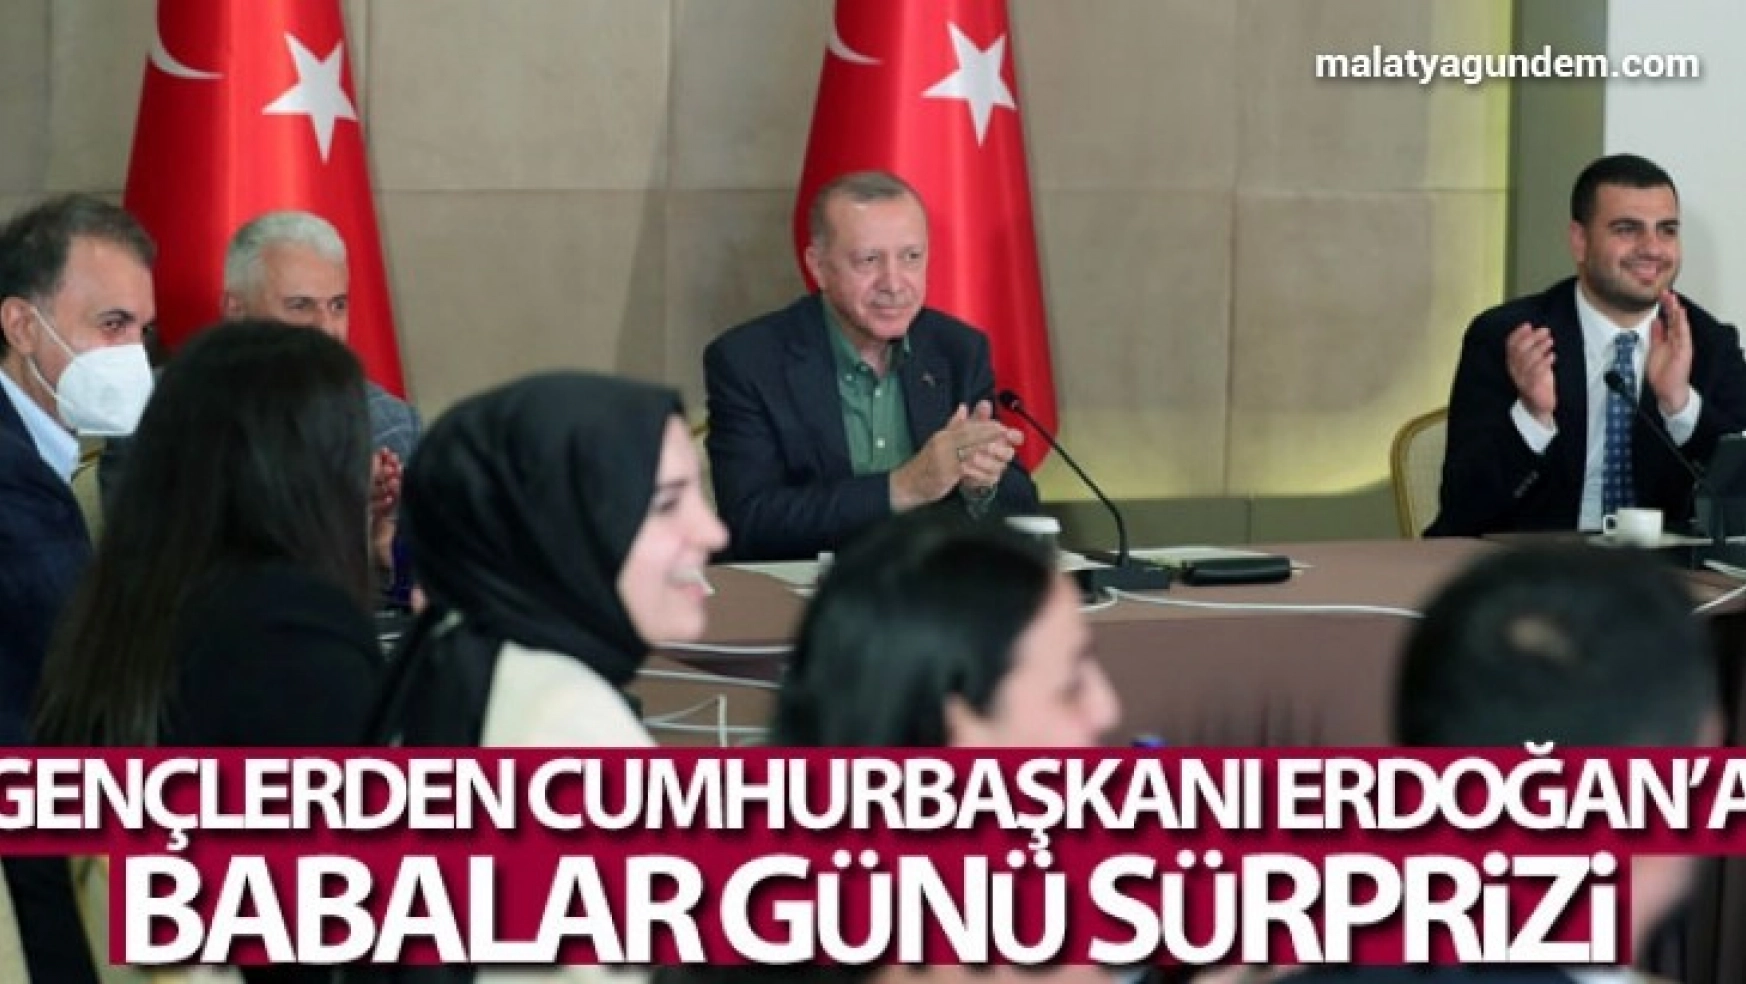 Gençlerden Cumhurbaşkanı Erdoğan'a Babalar Günü sürprizi